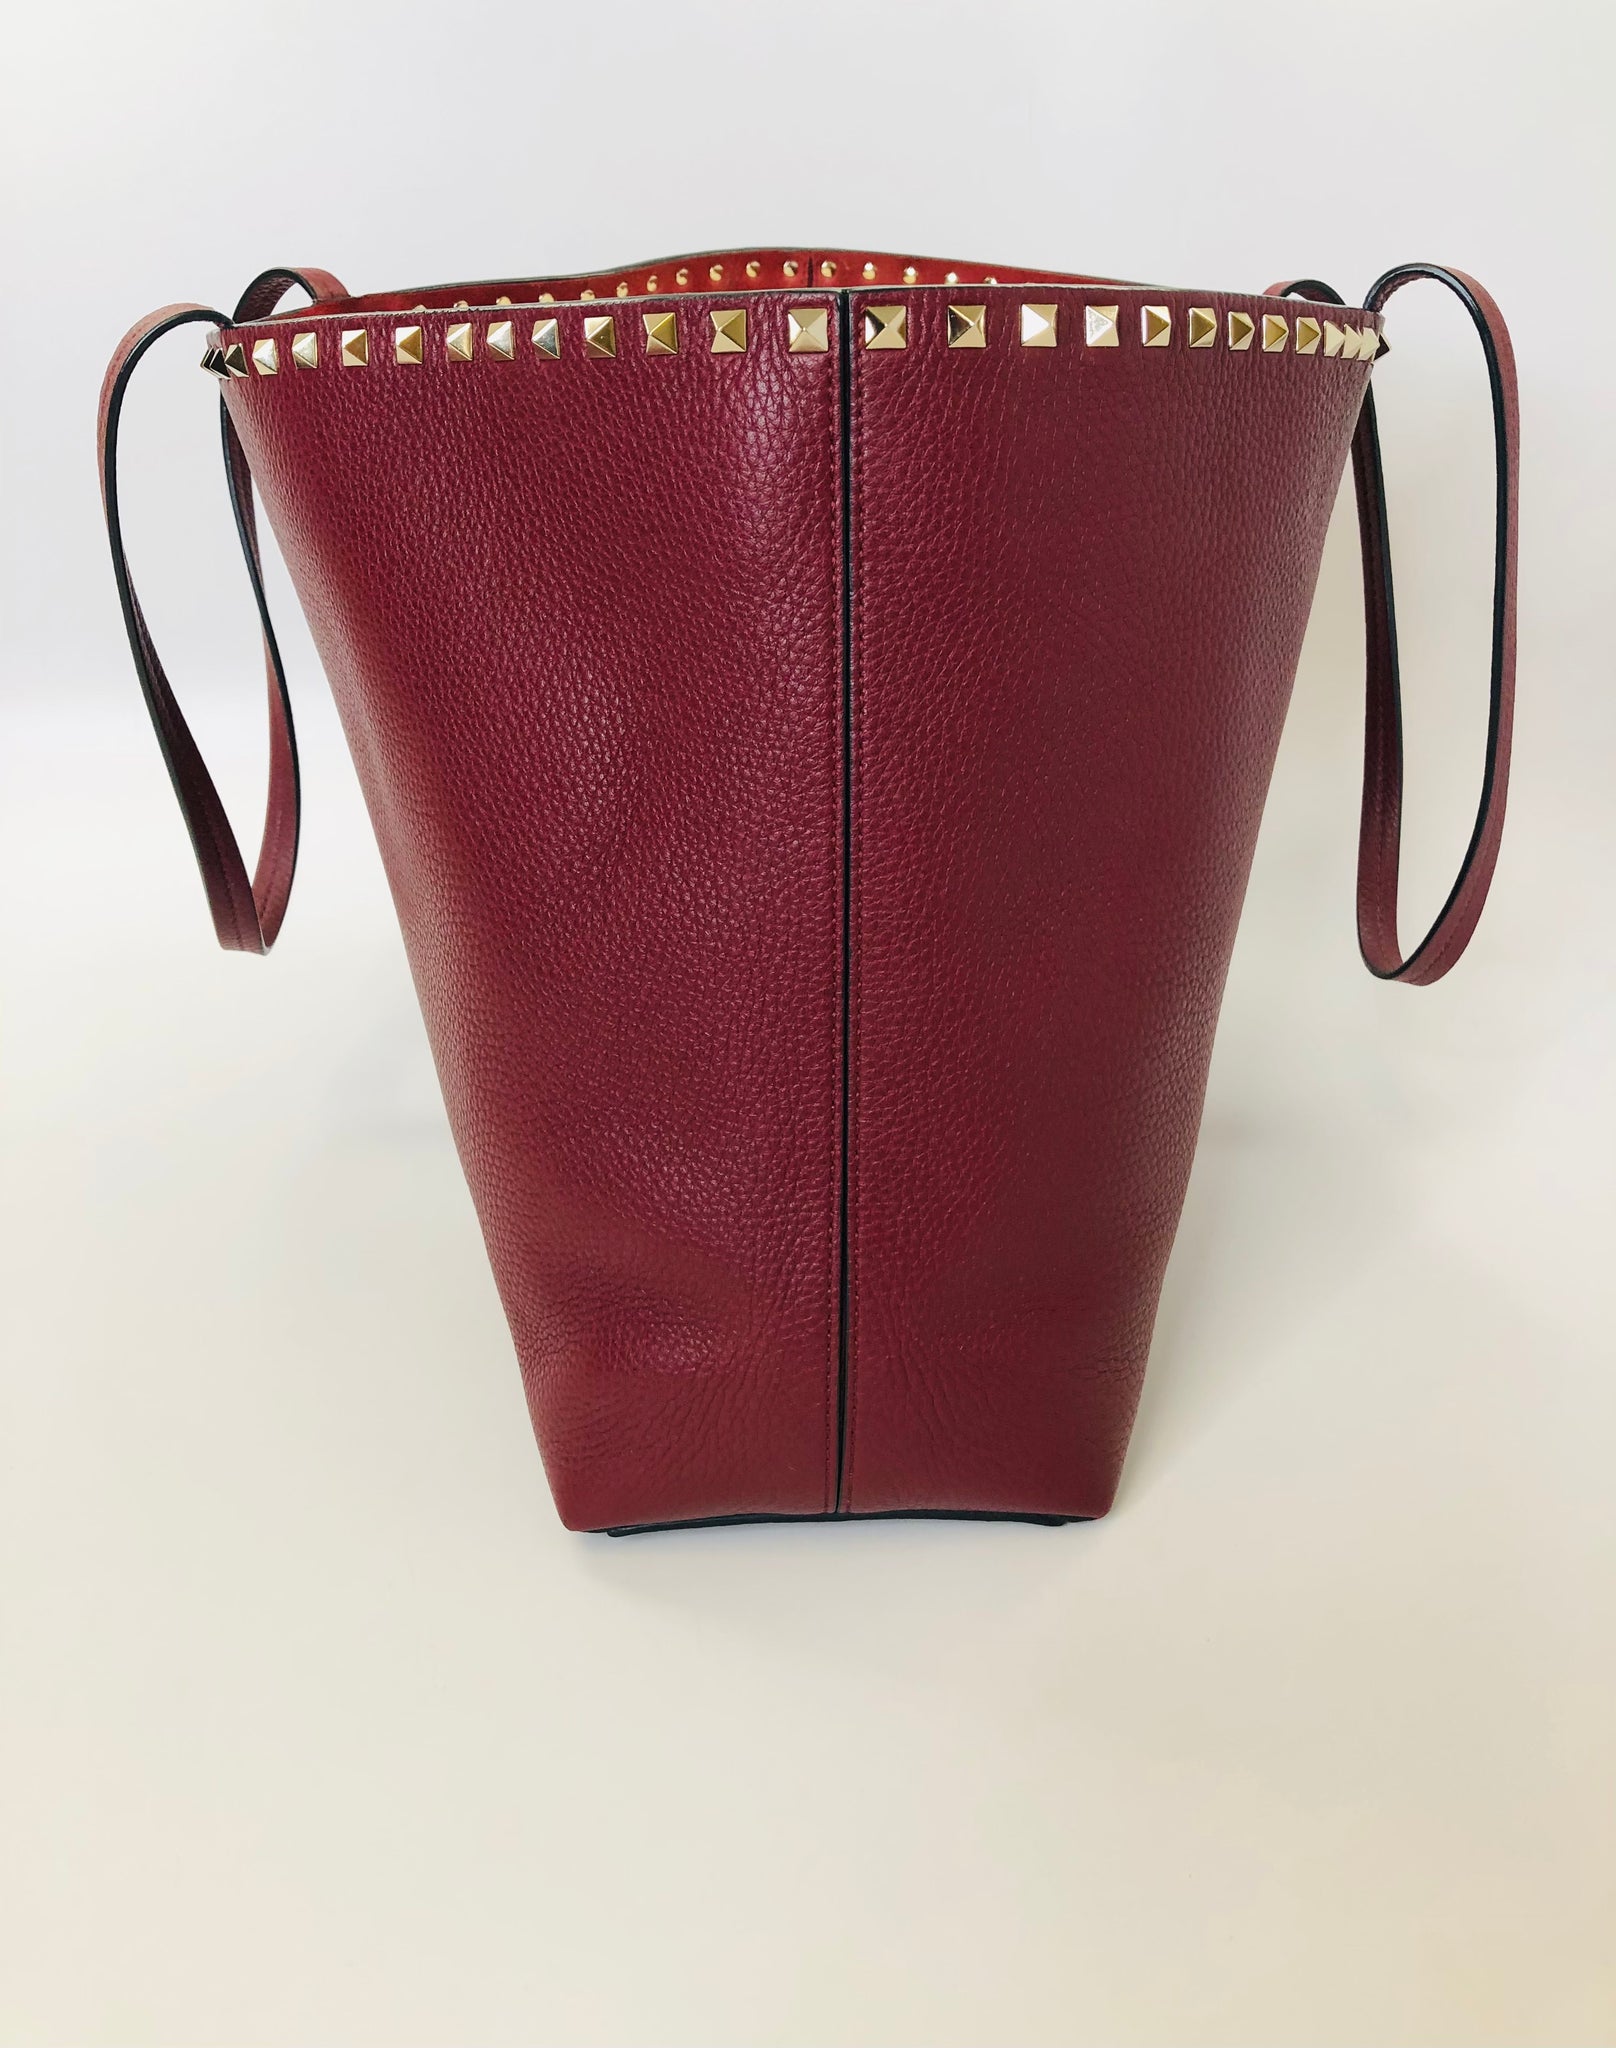 Valentino Garavani Women's 100% Leather Burgundy Rockstud Clutch